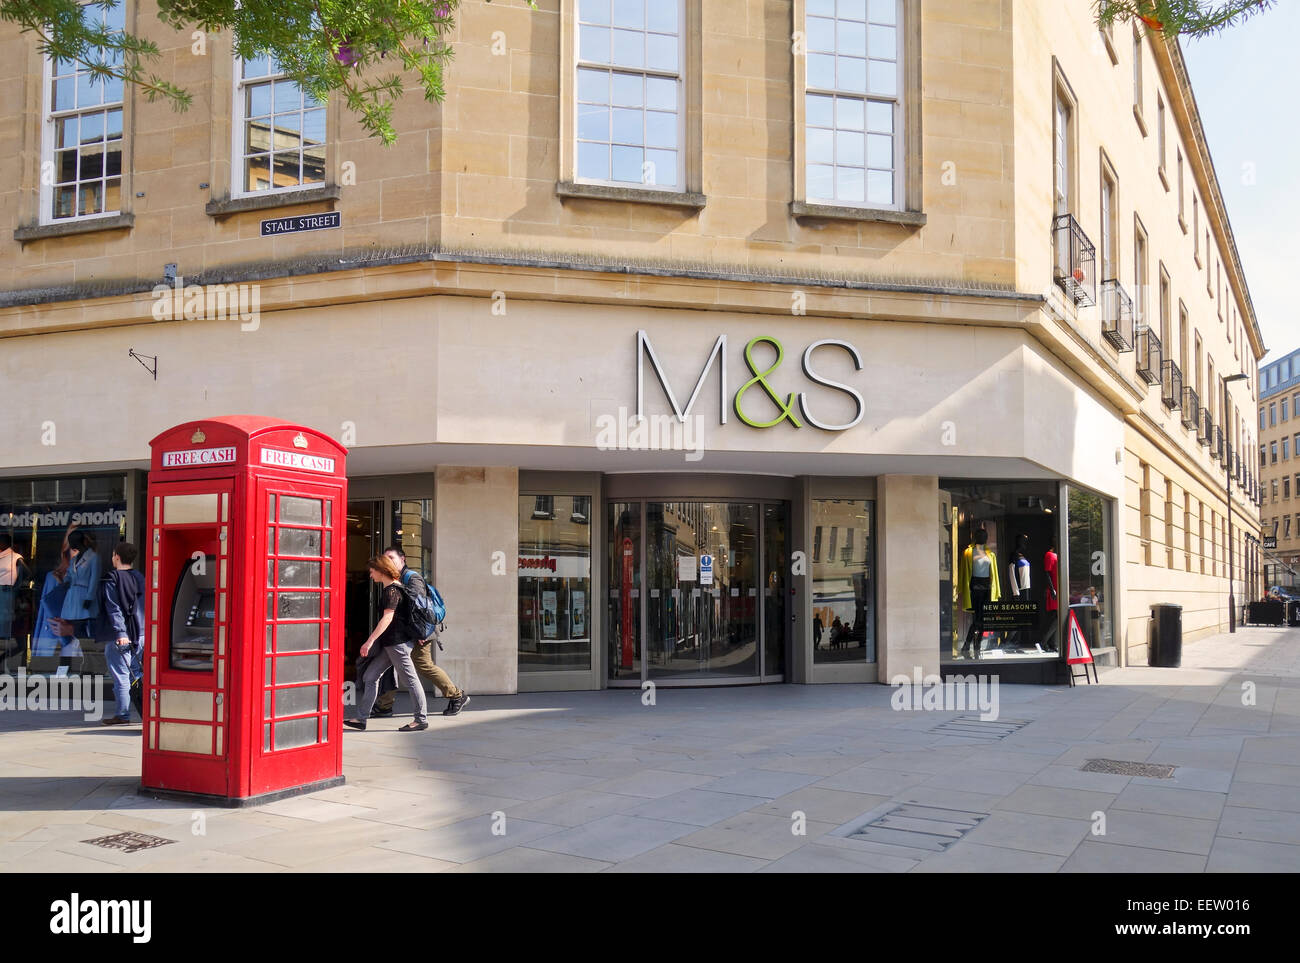 Marks & Spencer Store à Bath avec un ancien téléphone rouge à l'extérieur qui est maintenant un guichet automatique, Somerset, Angleterre, Royaume-Uni Banque D'Images